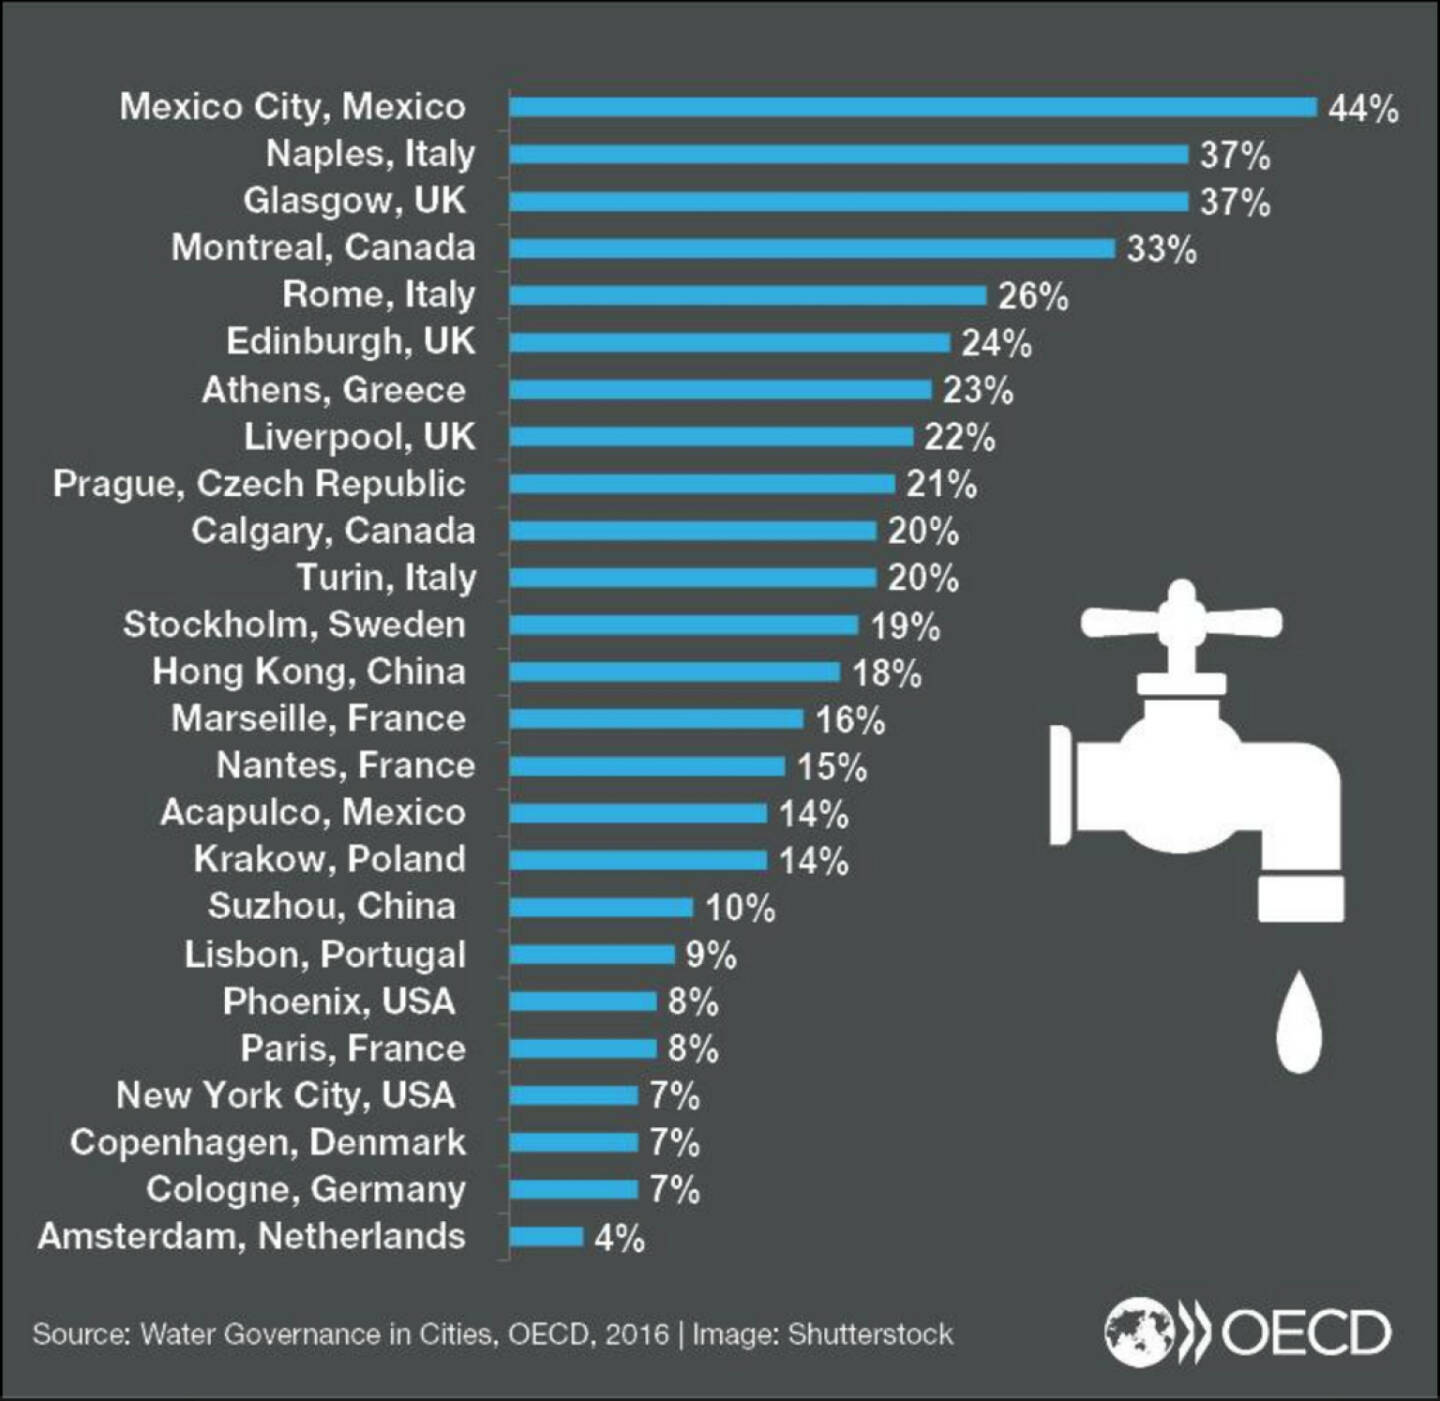 Wasserverlust in Großstädten:
Köln, New York 7%
Paris 8%
Liverpool 22%
Mexico City 44% !